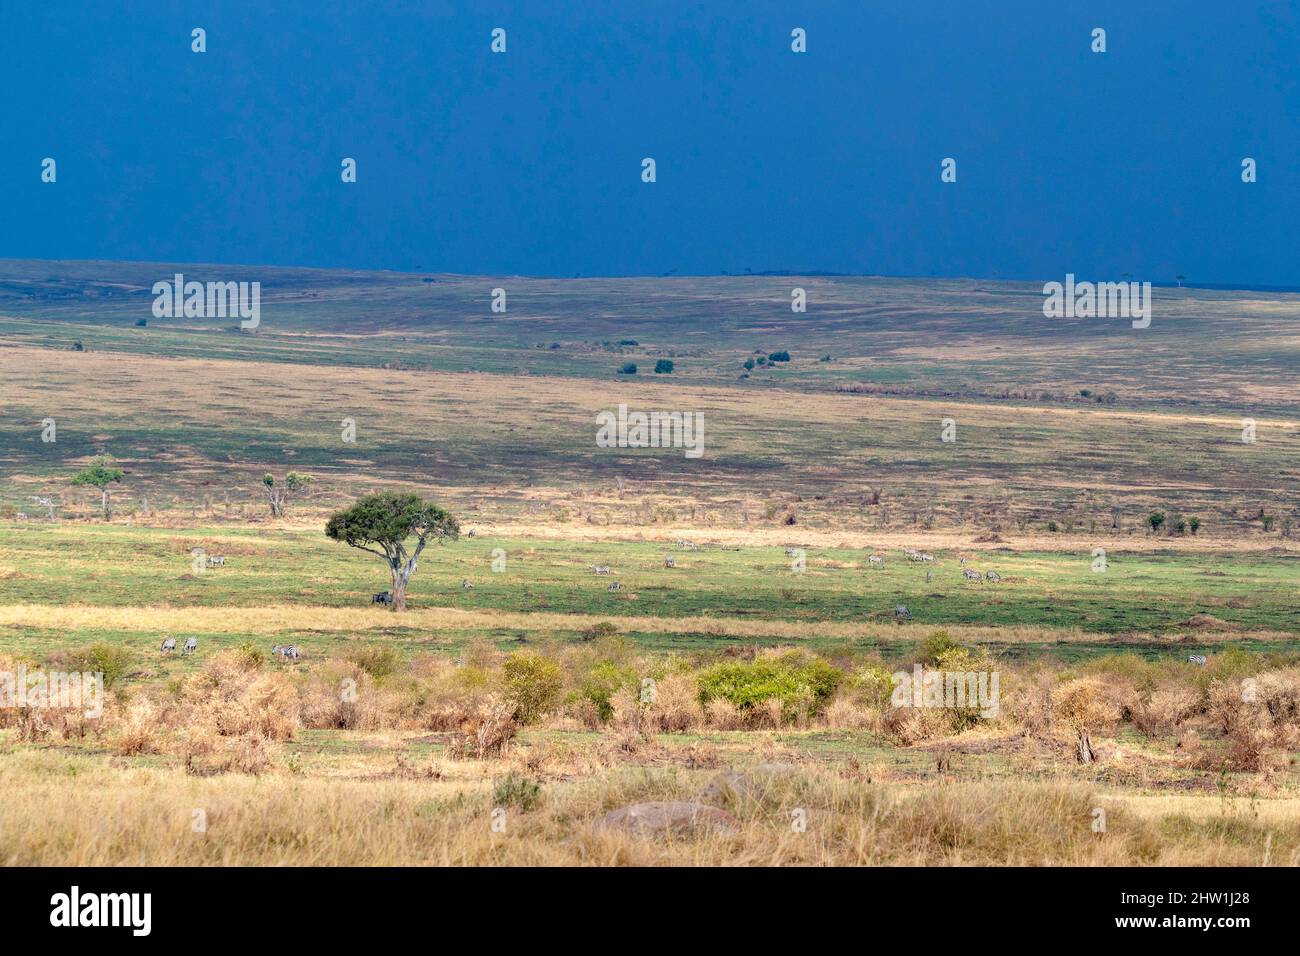 Kenya, Masai Mara National Reserve, Parco Nazionale, savana, grandi pianure ondulate praticamente senza alberi Foto Stock